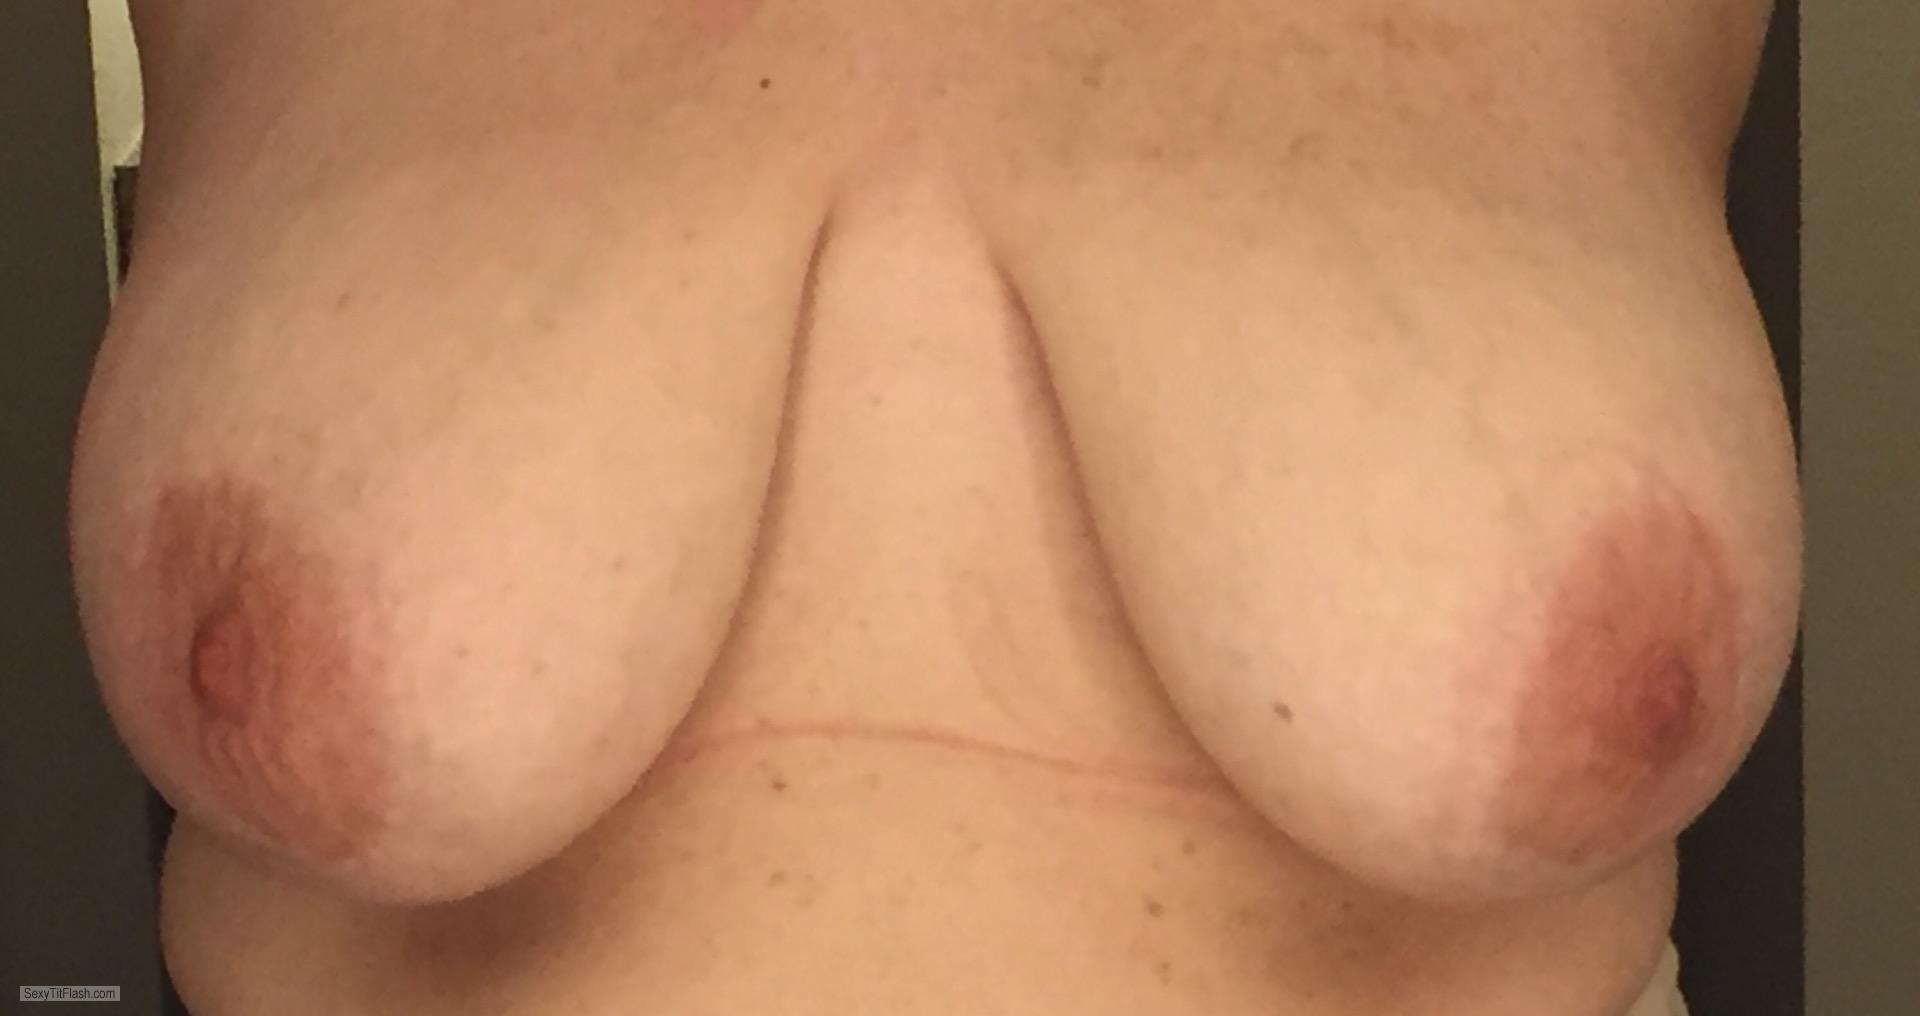 Tit Flash: My Very Big Tits - Pretty Nips from United States